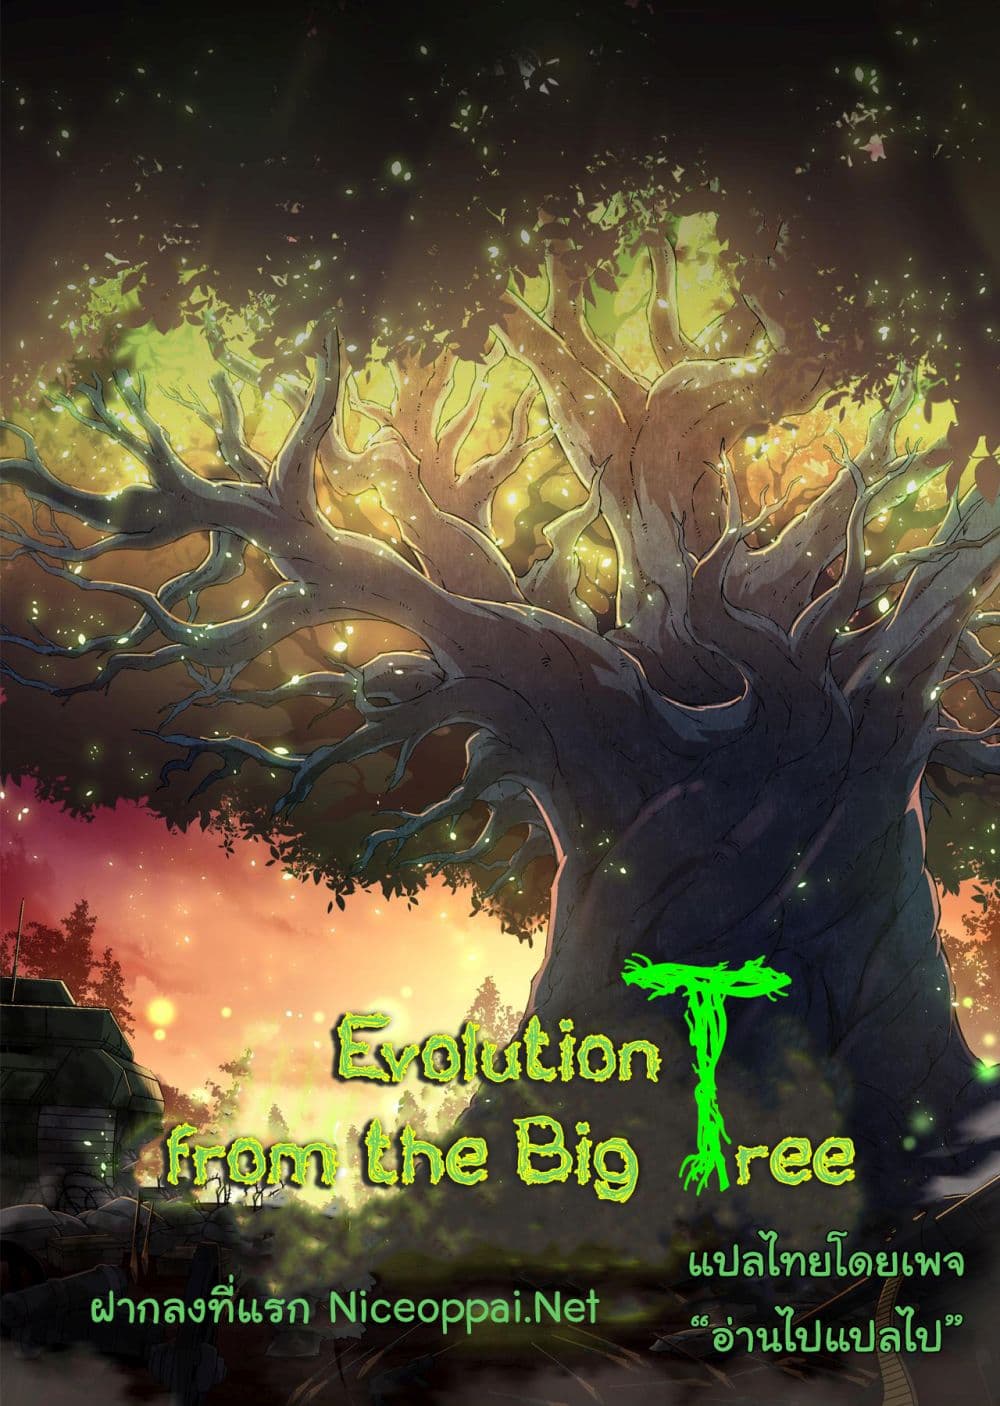 Evolution from the Big Tree Ã Â¸â€¢Ã Â¸Â­Ã Â¸â„¢Ã Â¸â€”Ã Â¸ÂµÃ Â¹Ë† 28 (1)